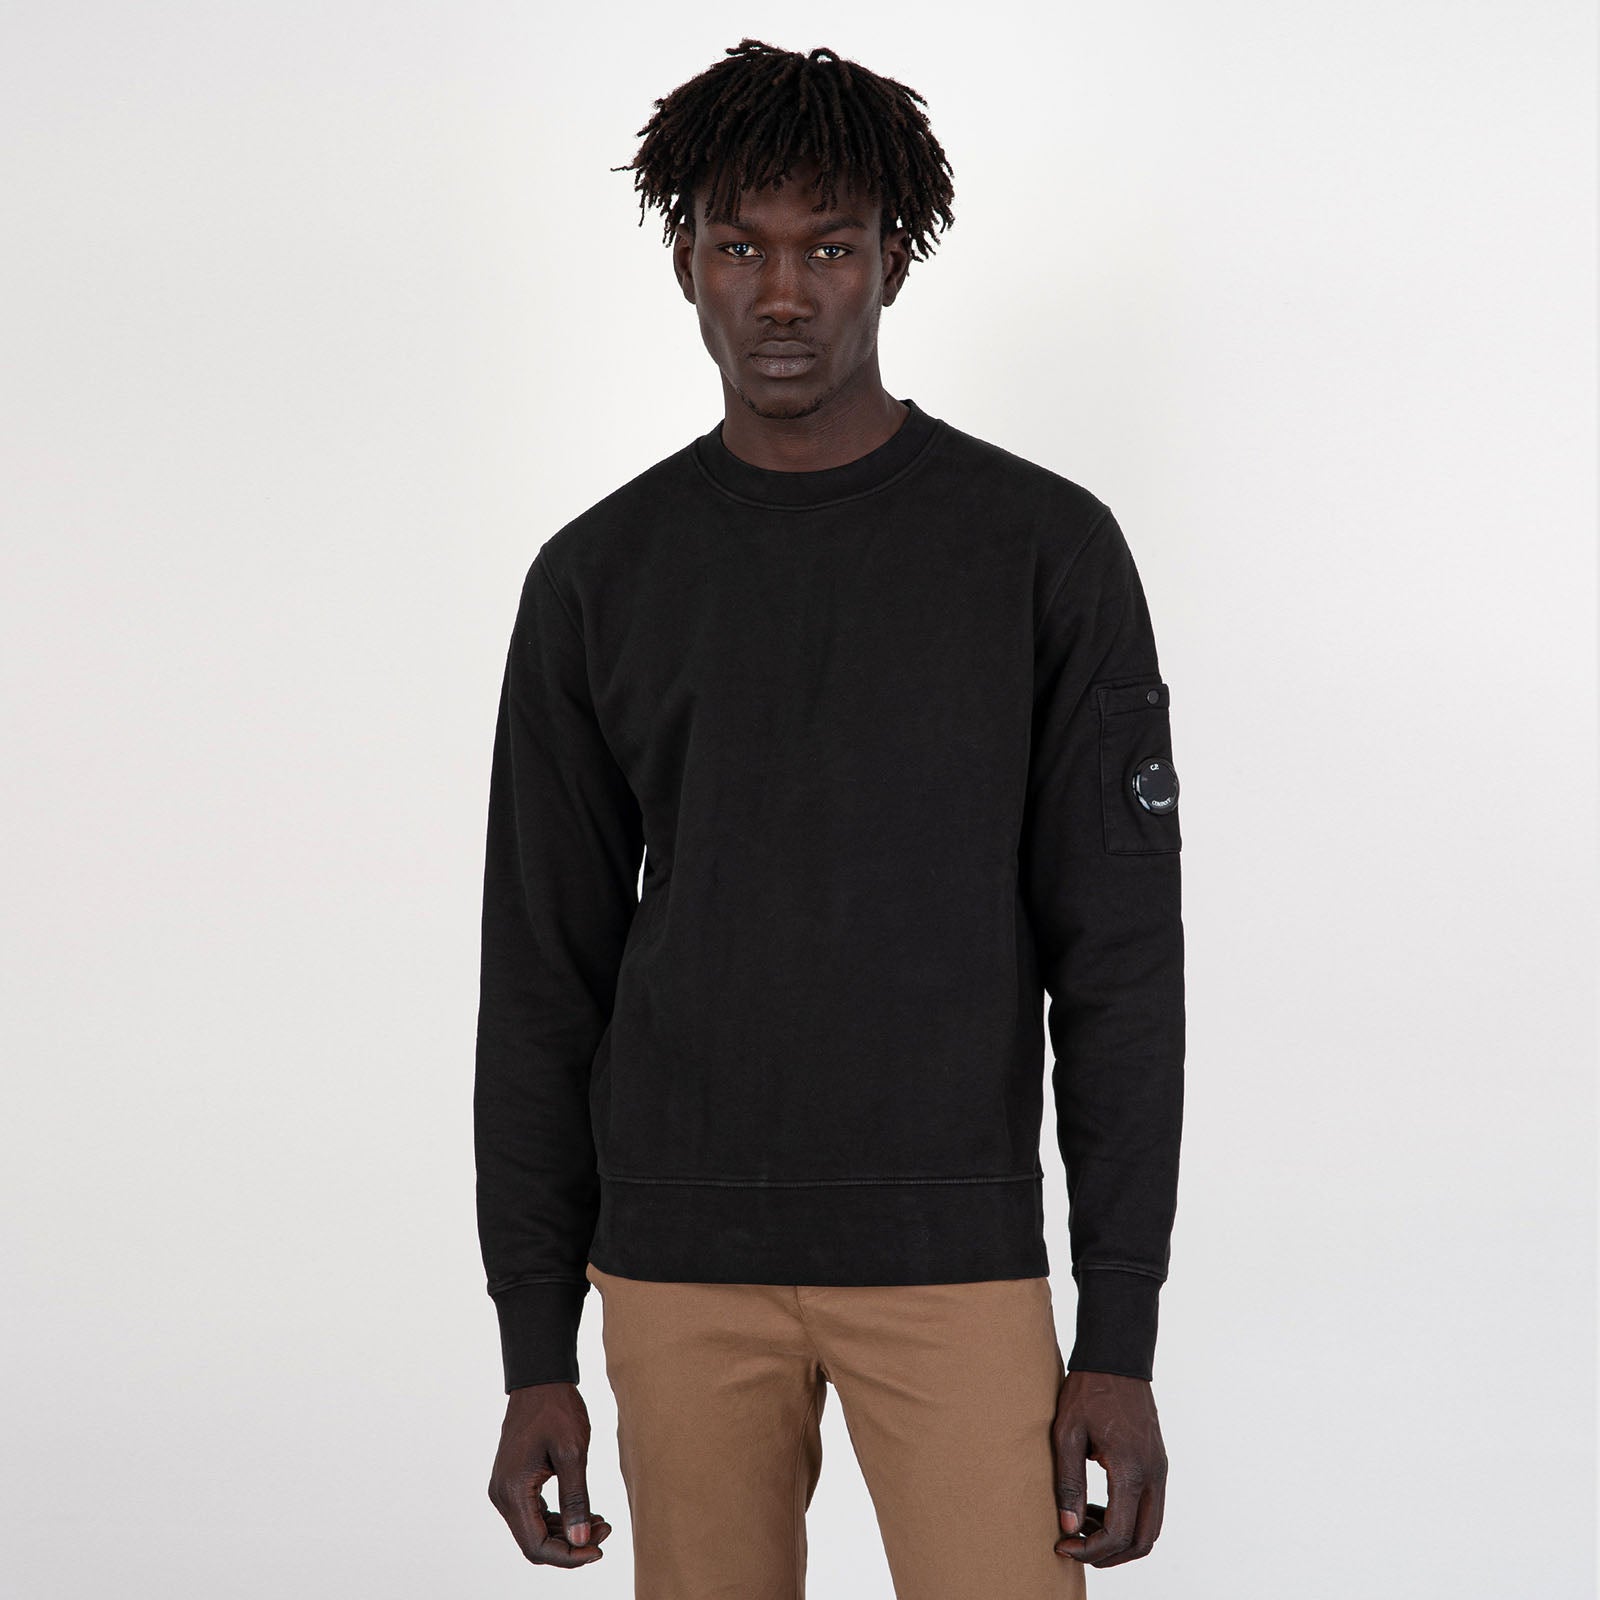 Diagonal Fleece Brushed Emerized Black Men's Sweatshirt - 7